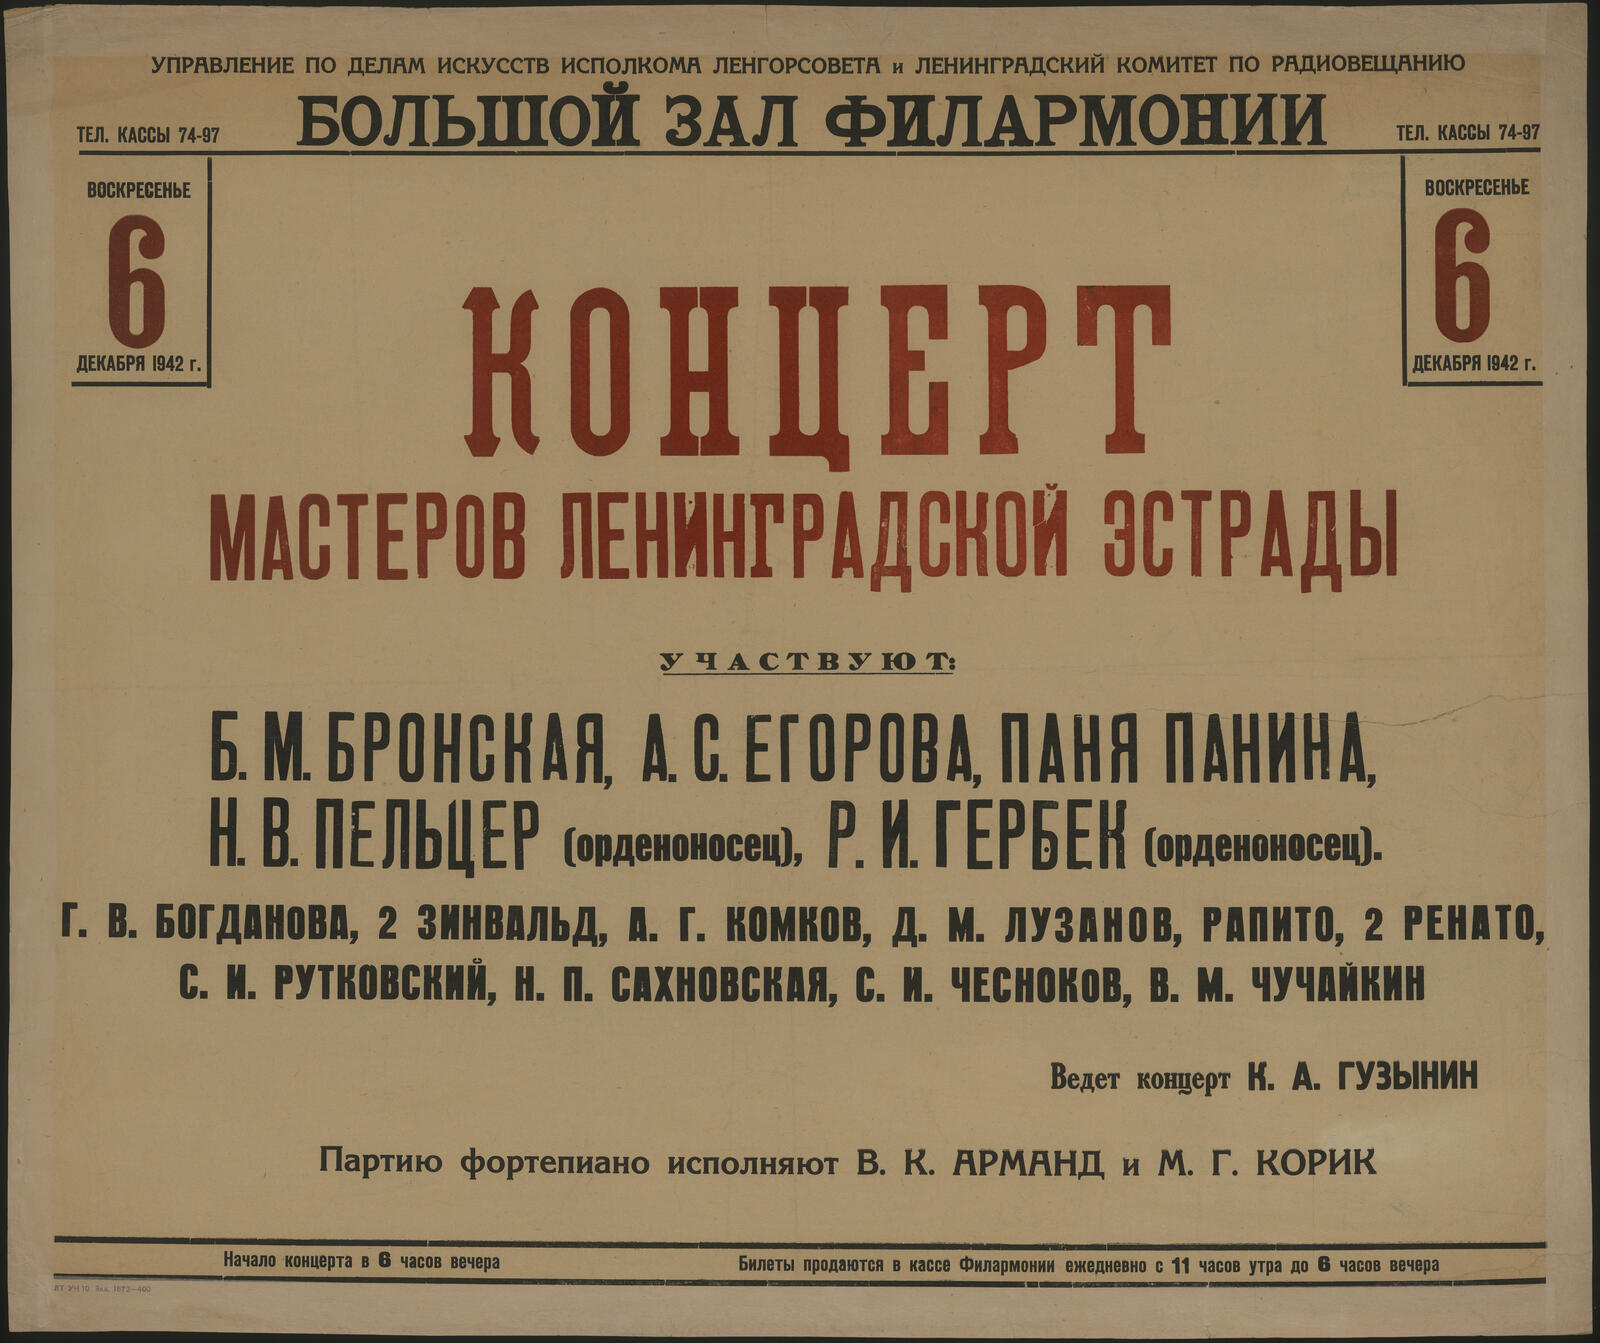 Изображение книги Концерт мастеров Ленинградской эстрады, воскресенье 6 декабря 1942 г.